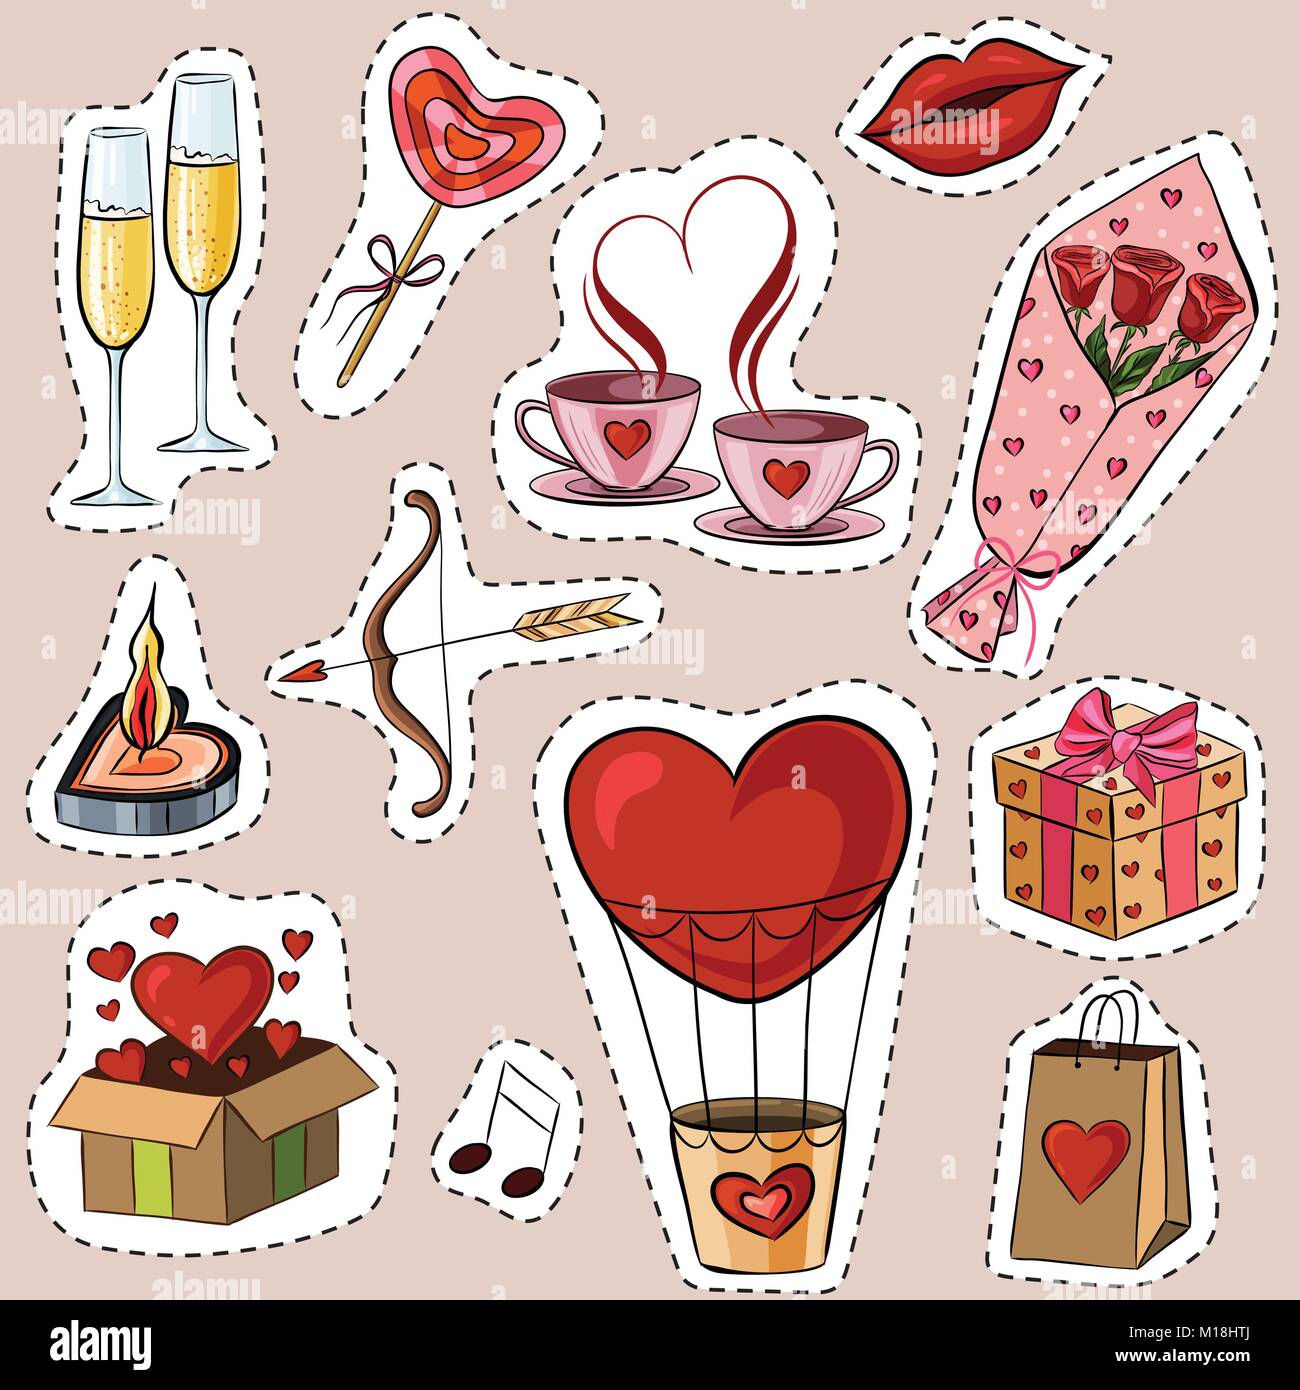 Illustrazione Vettoriale di cartoon adesivi per il giorno di San Valentino. Illustrazione Vettoriale